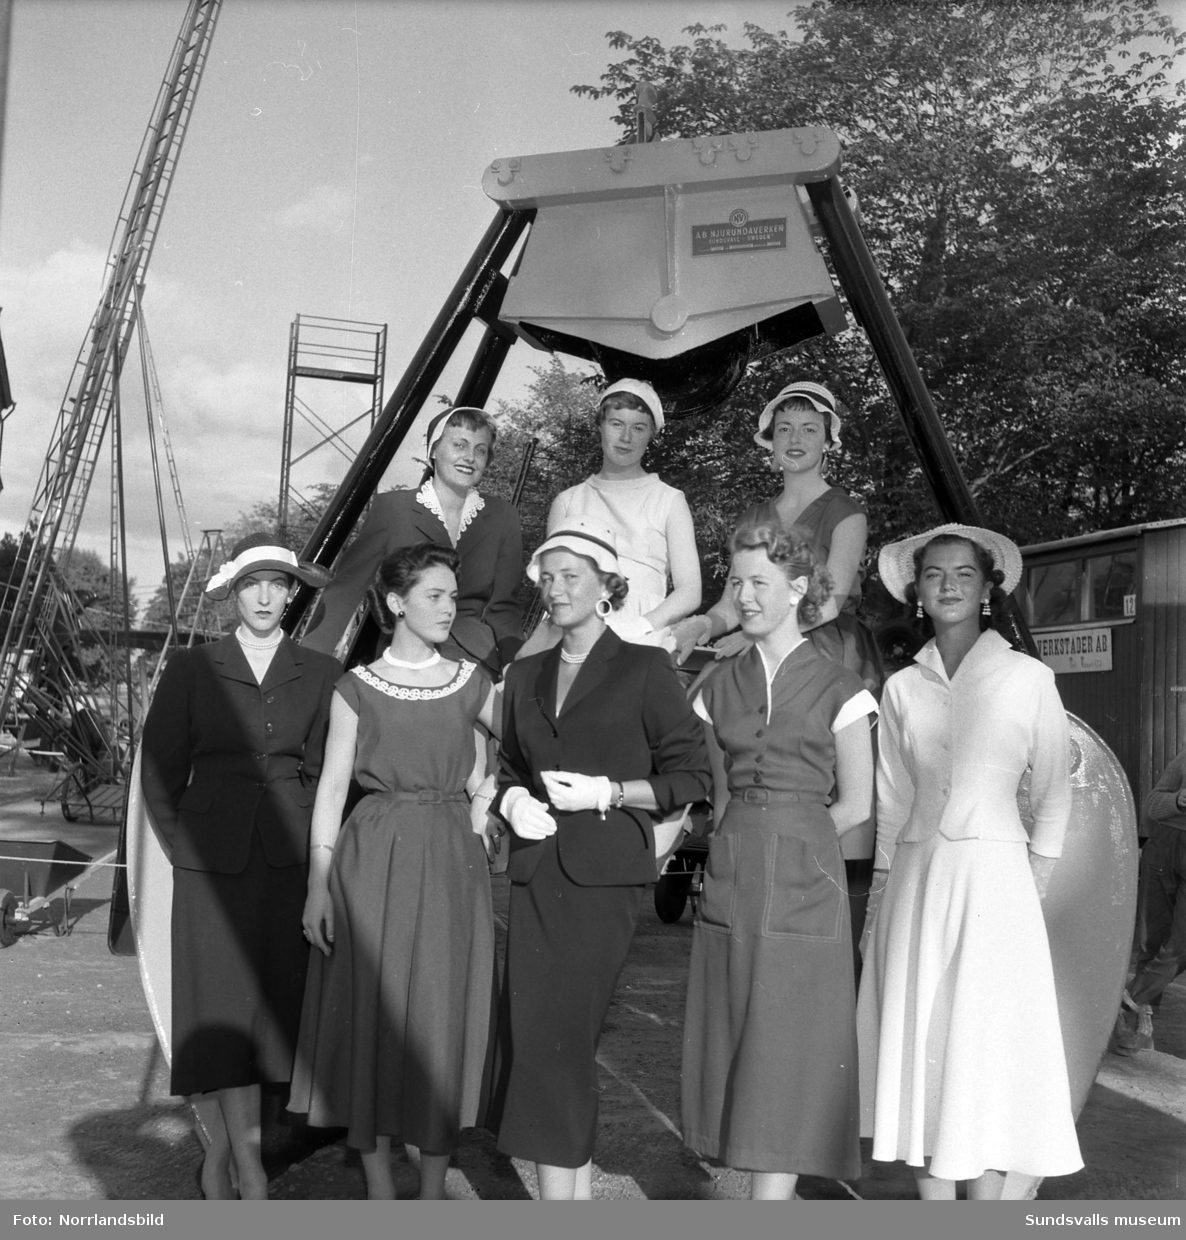 WI-BE-verken (Njurundaverken ?). Monter på Sundsvallsmässan 1954 med massor av höga stegar, samt en parad av vackra damer.